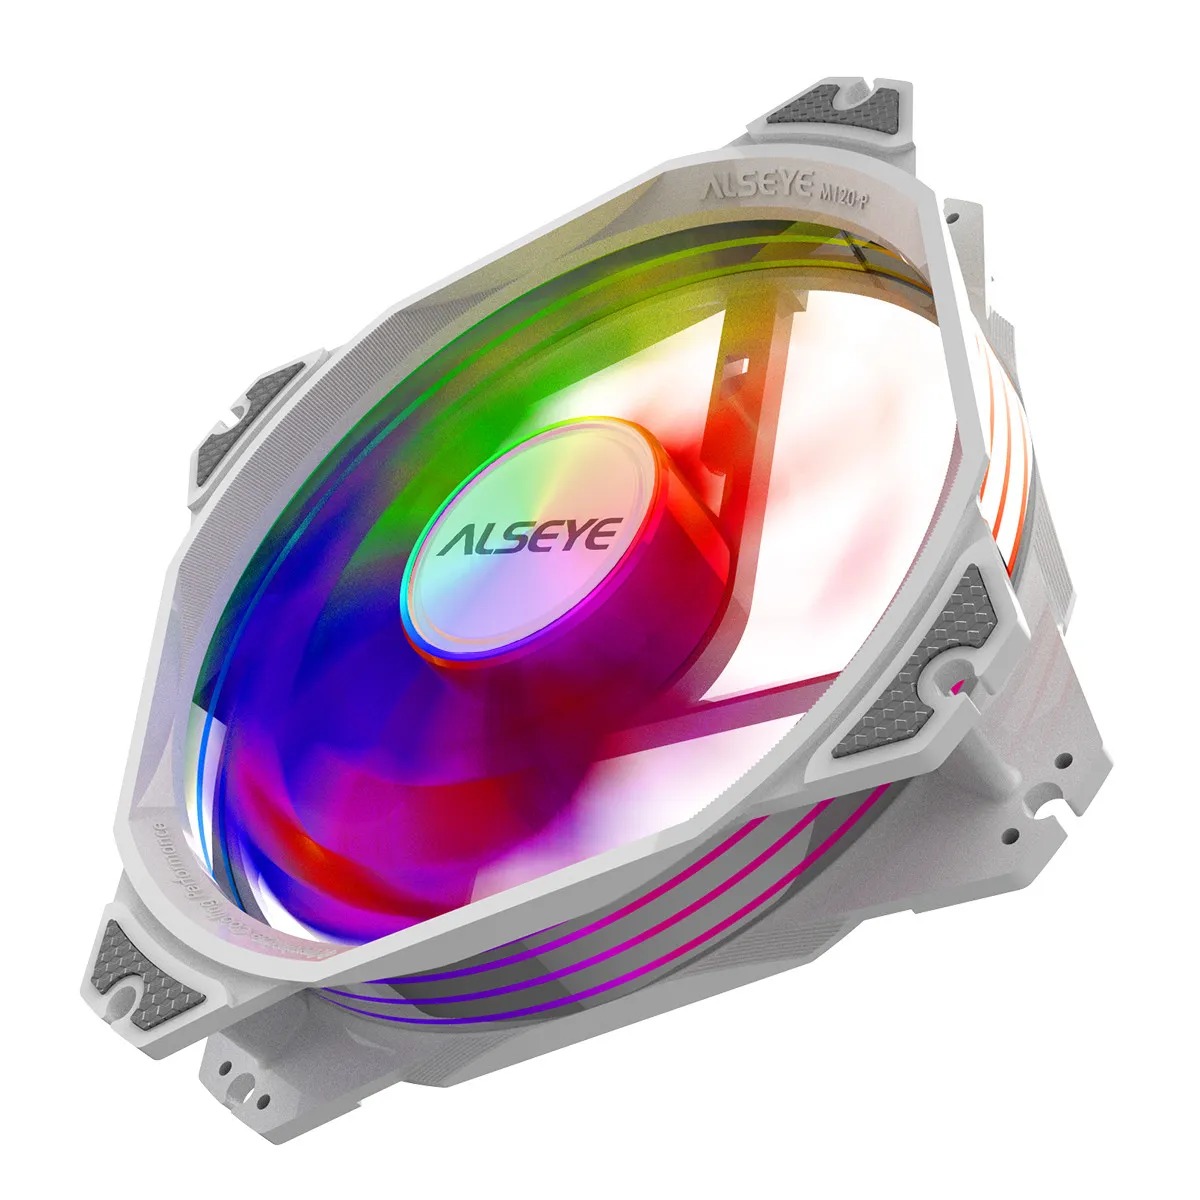 Кулер ALSEYE M360 для ЦП с белым корпусом и синхронизацией RGB, 360 мм, ШИМ-вентилятор с водяным охлаждением для LGA 775/115x/1366/2011/AM2/AM3/AM4#3